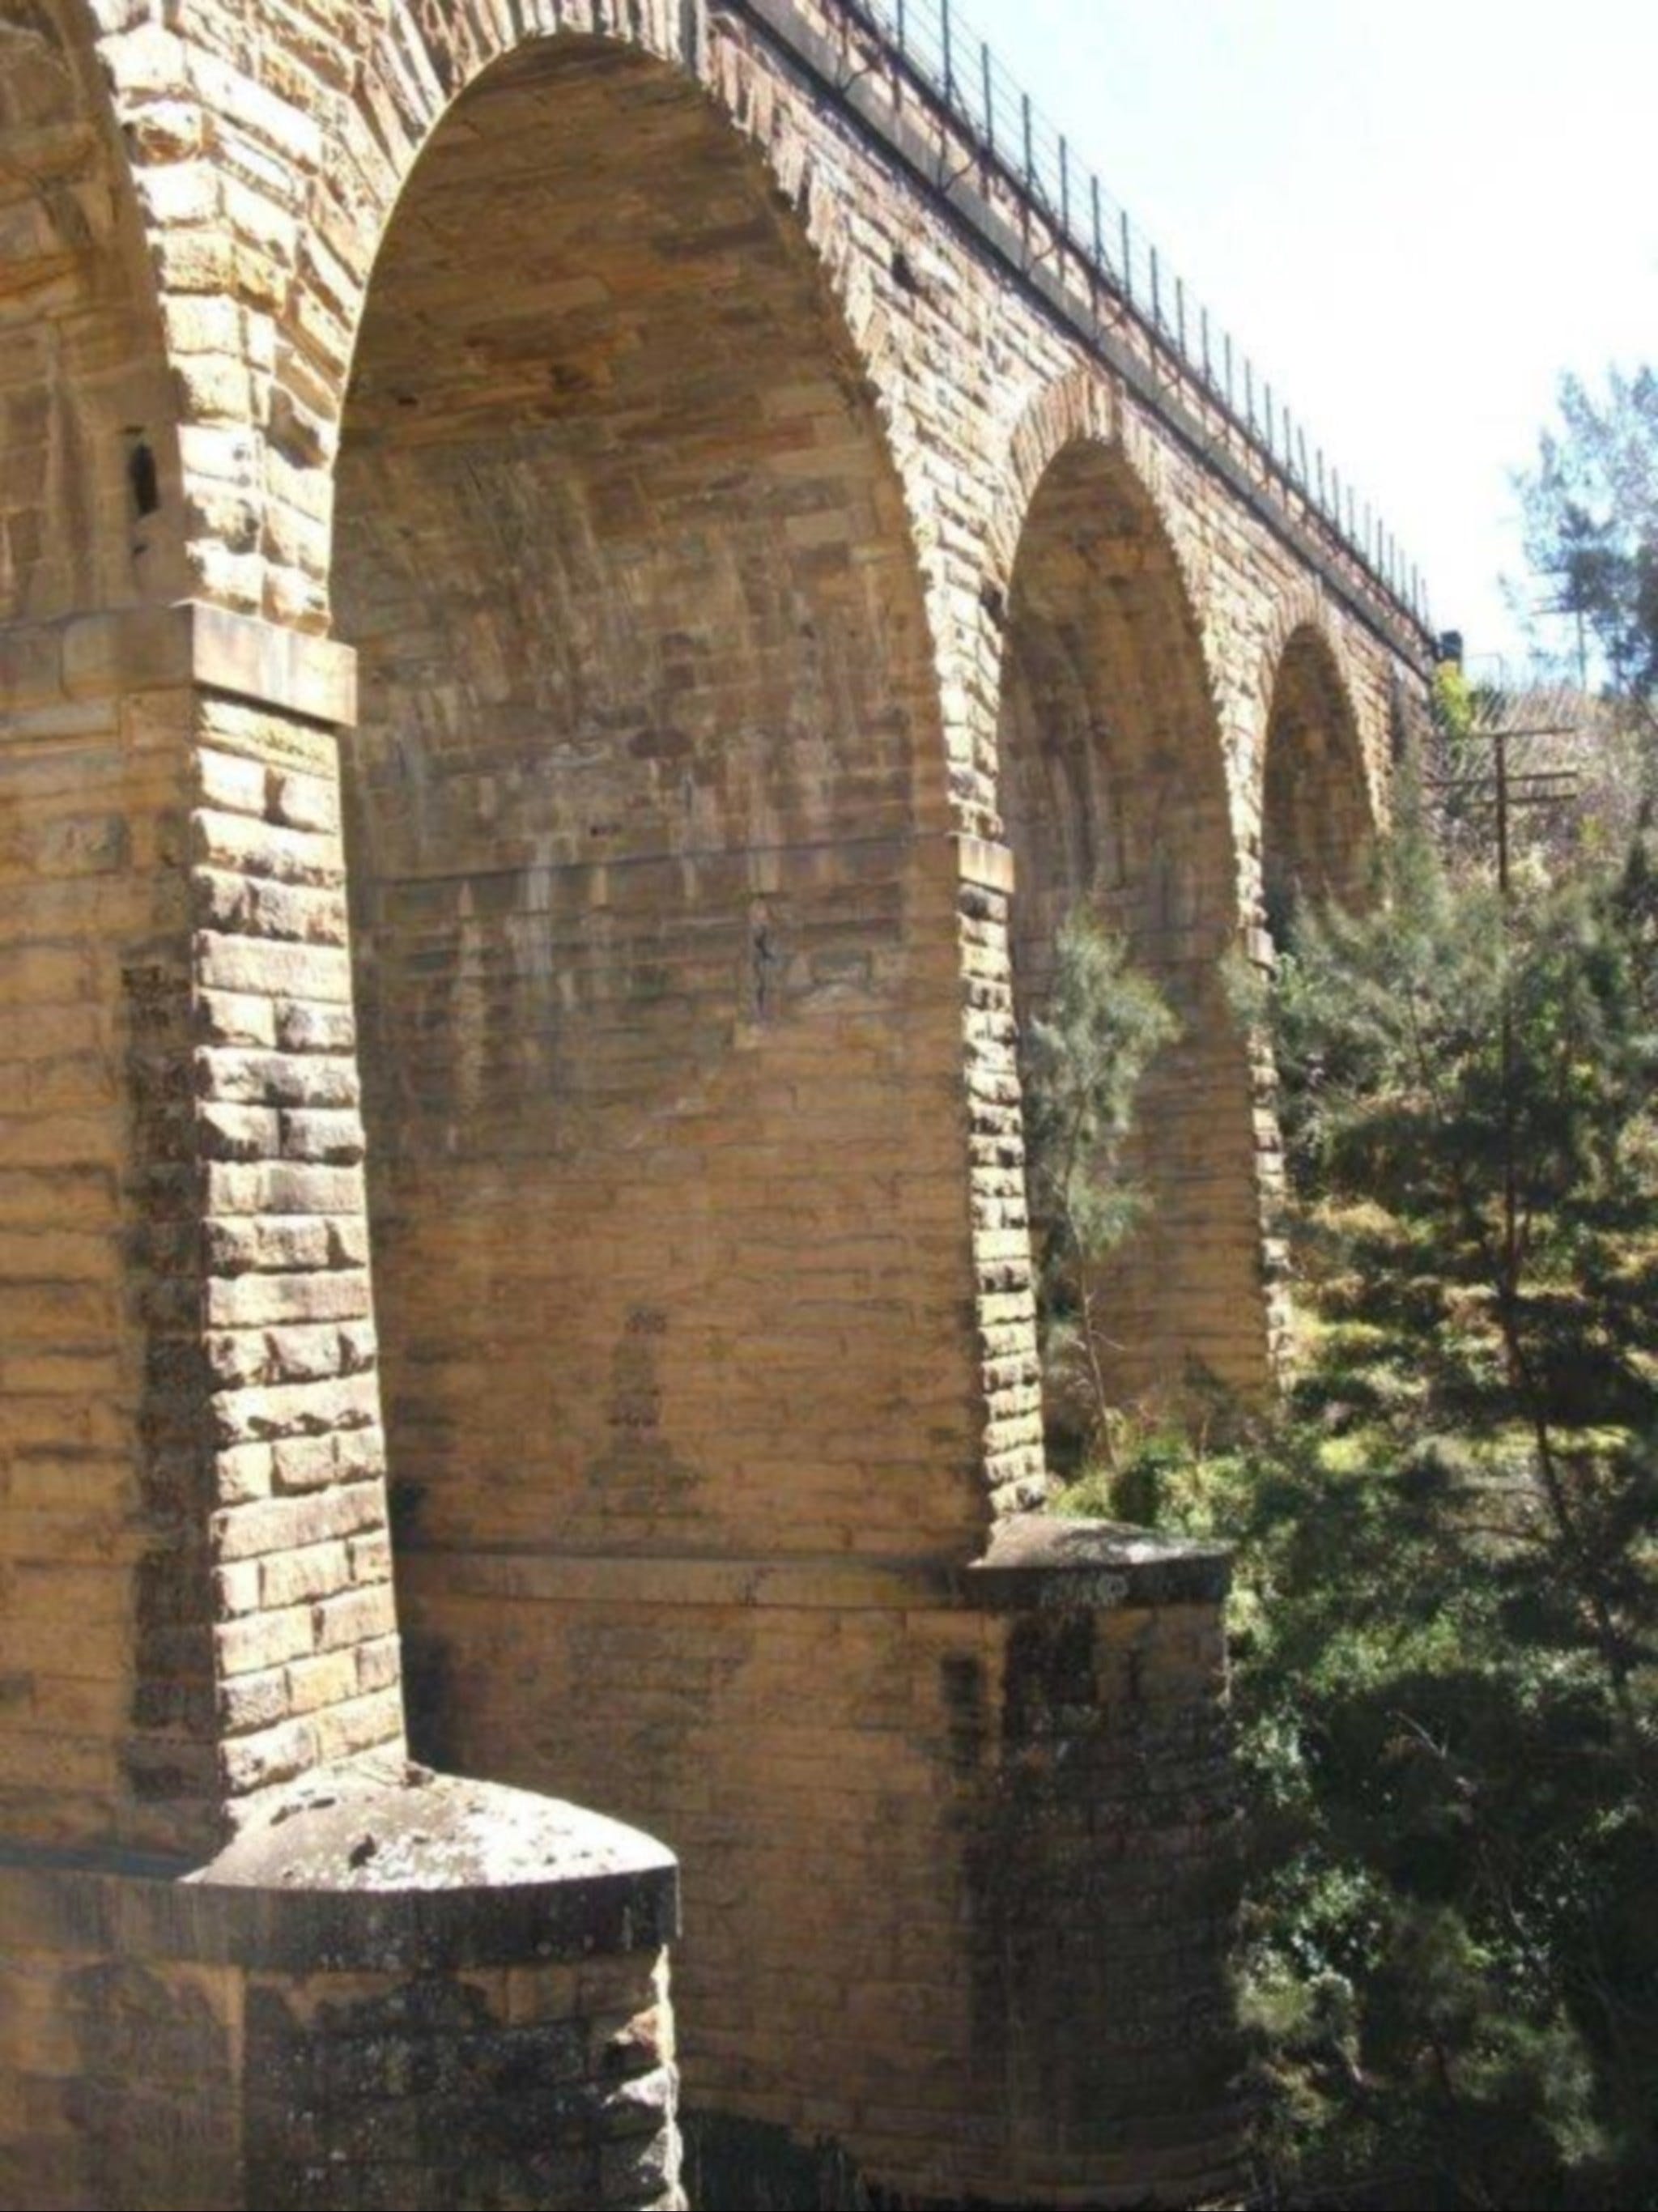 Picton Railway Viaduct - Accommodation Brunswick Heads